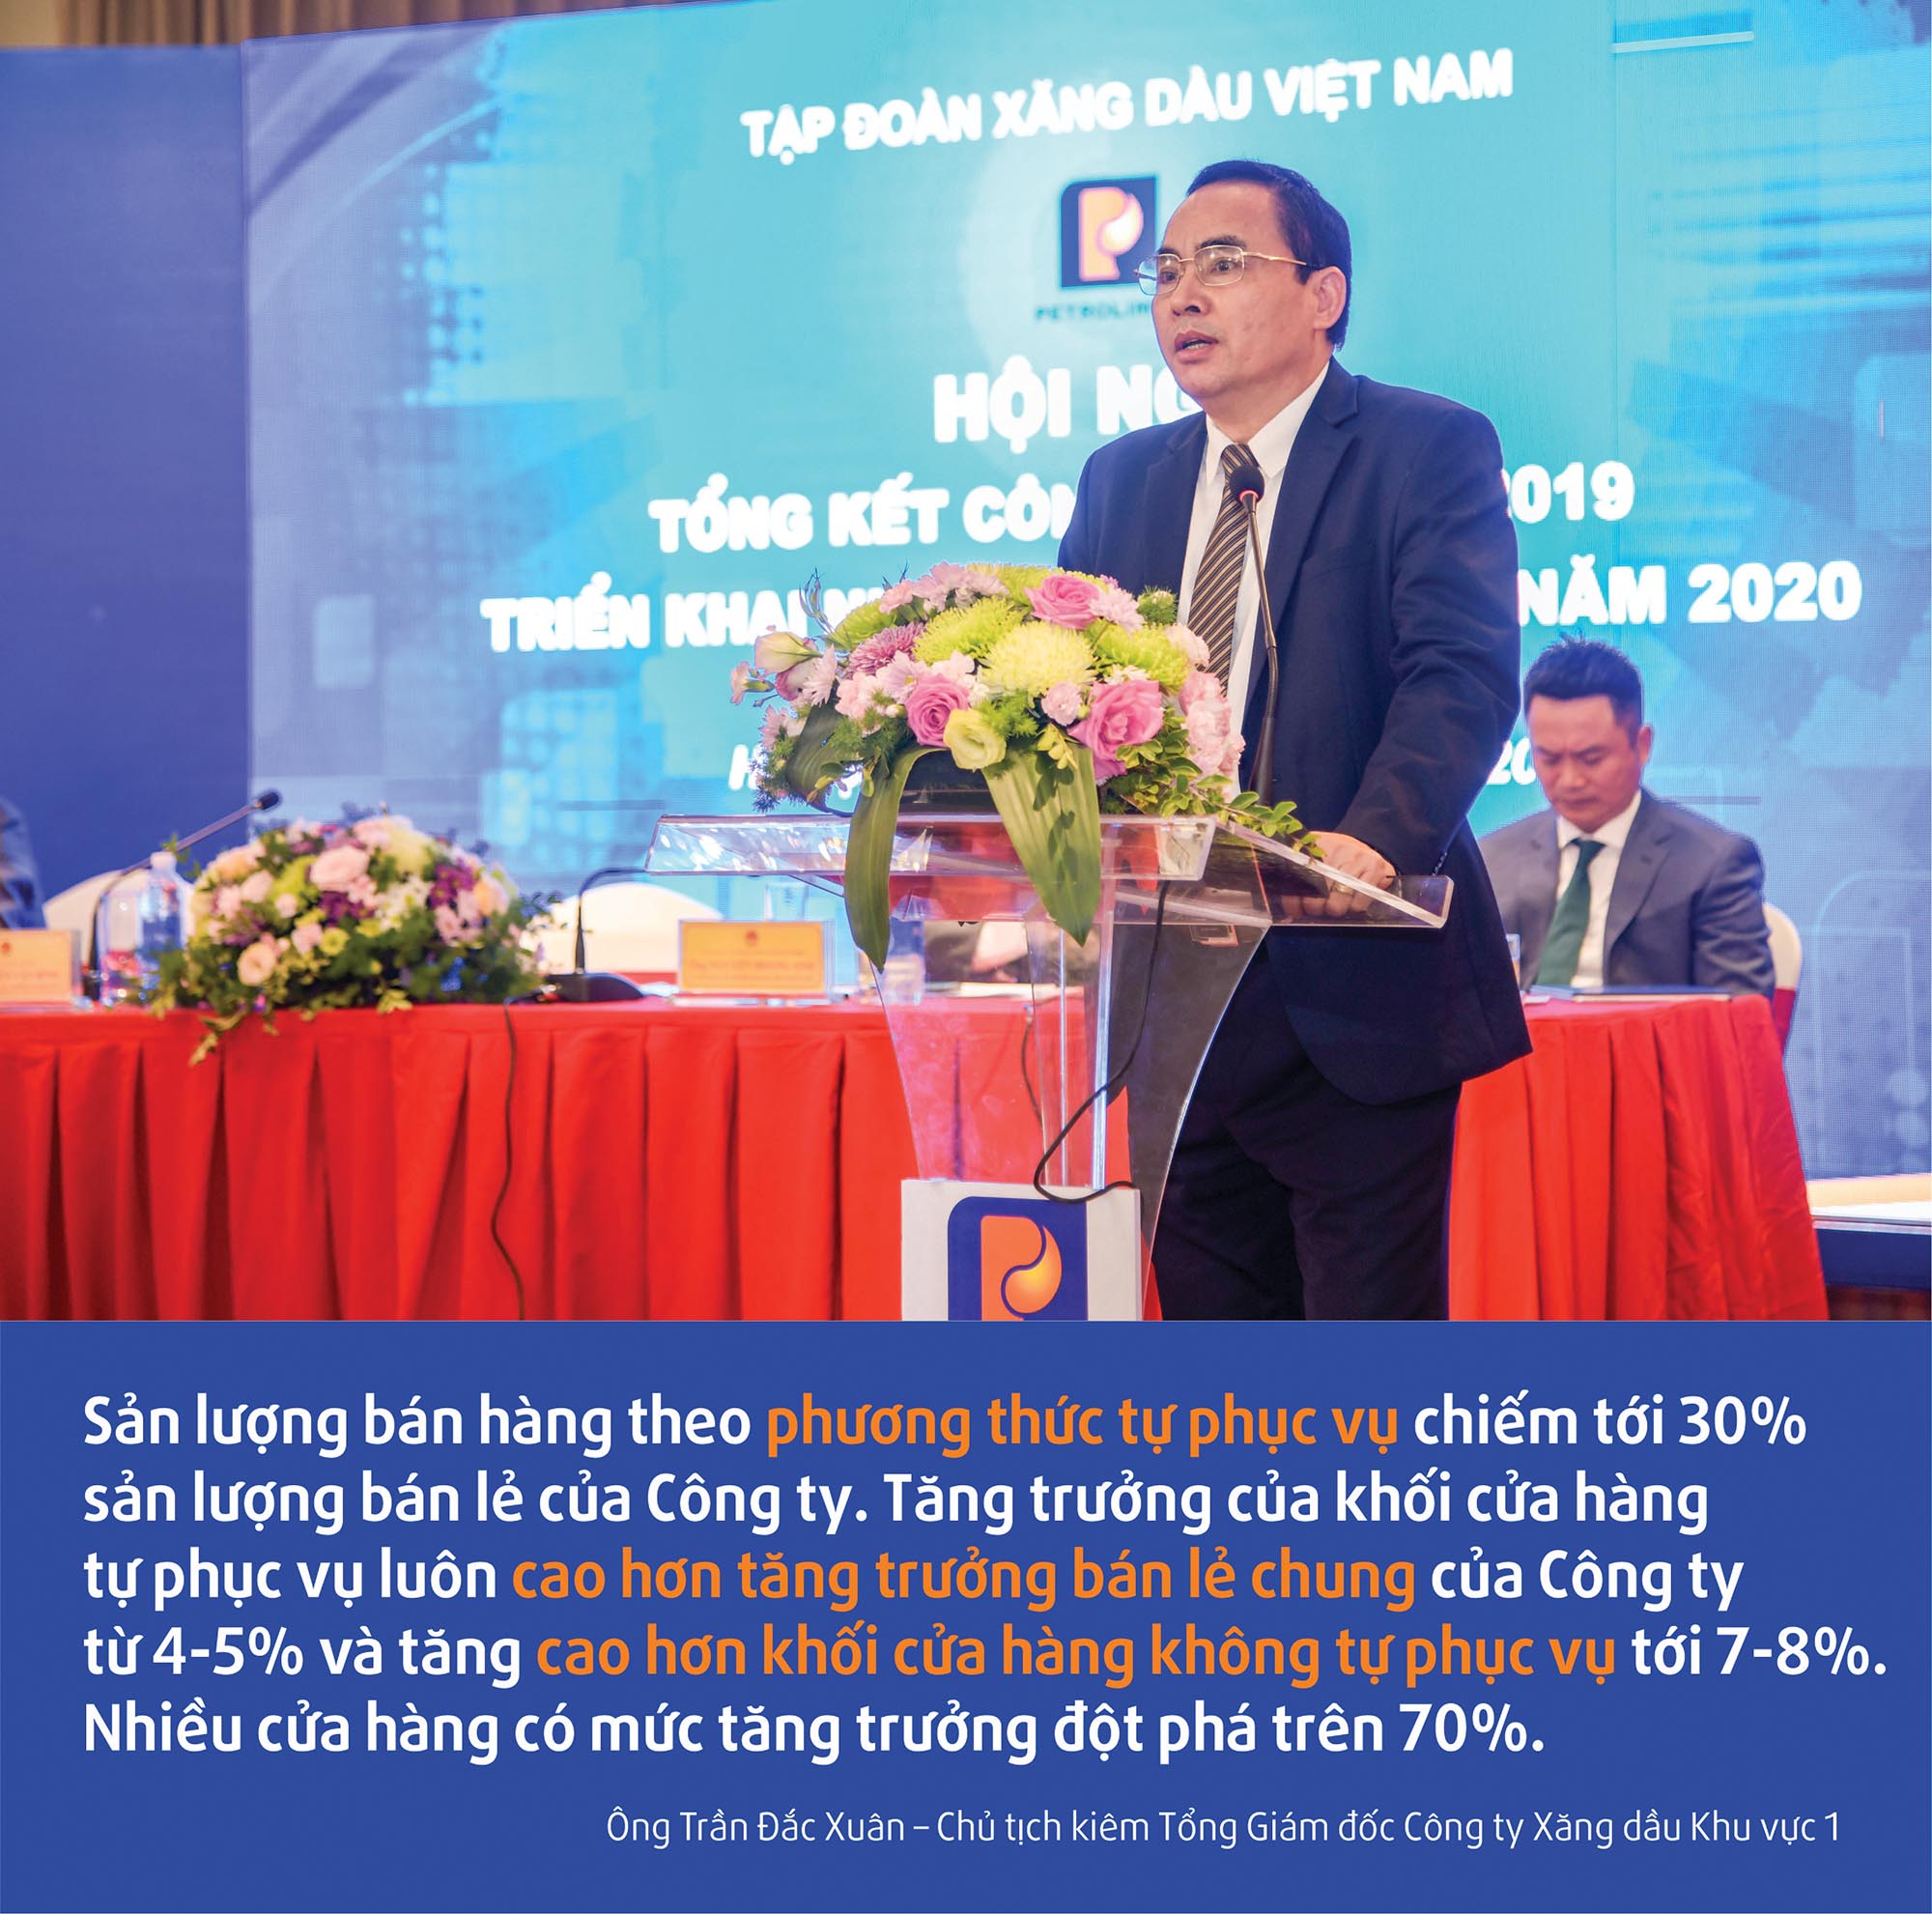 Ông Trần Đắc Xuân – Chủ tịch kiêm Tổng Giám đốc Công ty Xăng dầu Khu vực 1  Petrolimex Tây Ninh: Tạo động lực khuyến khích 